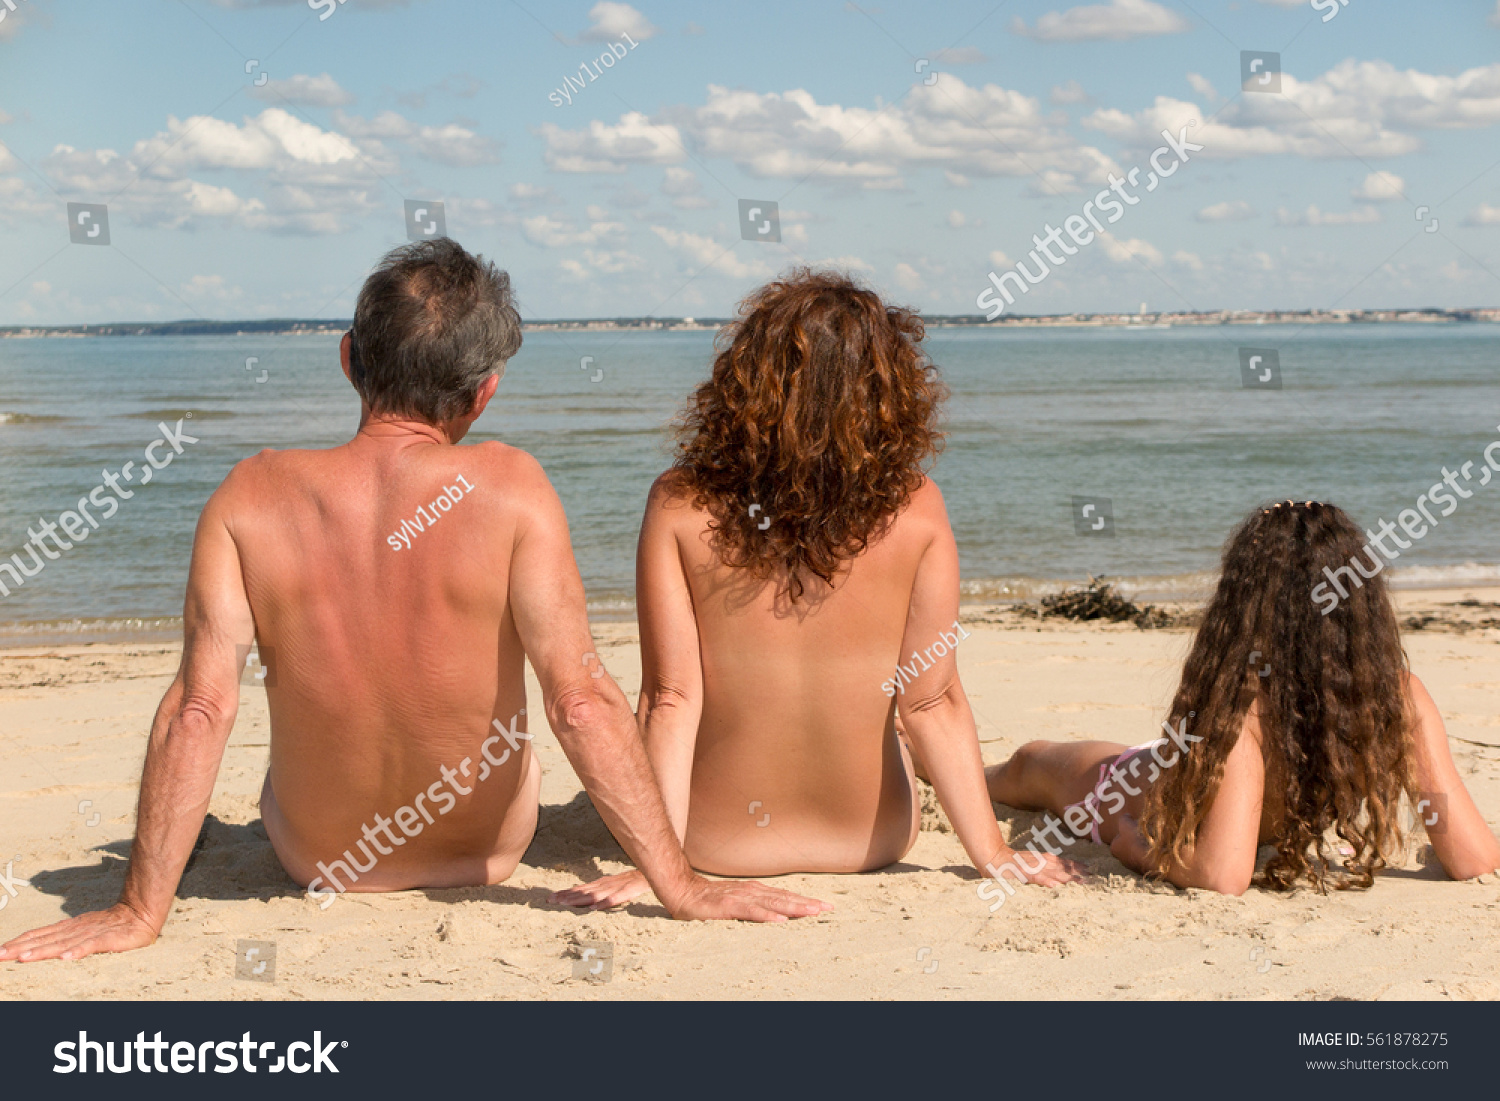 are bekkelund add photo naturist family at beach